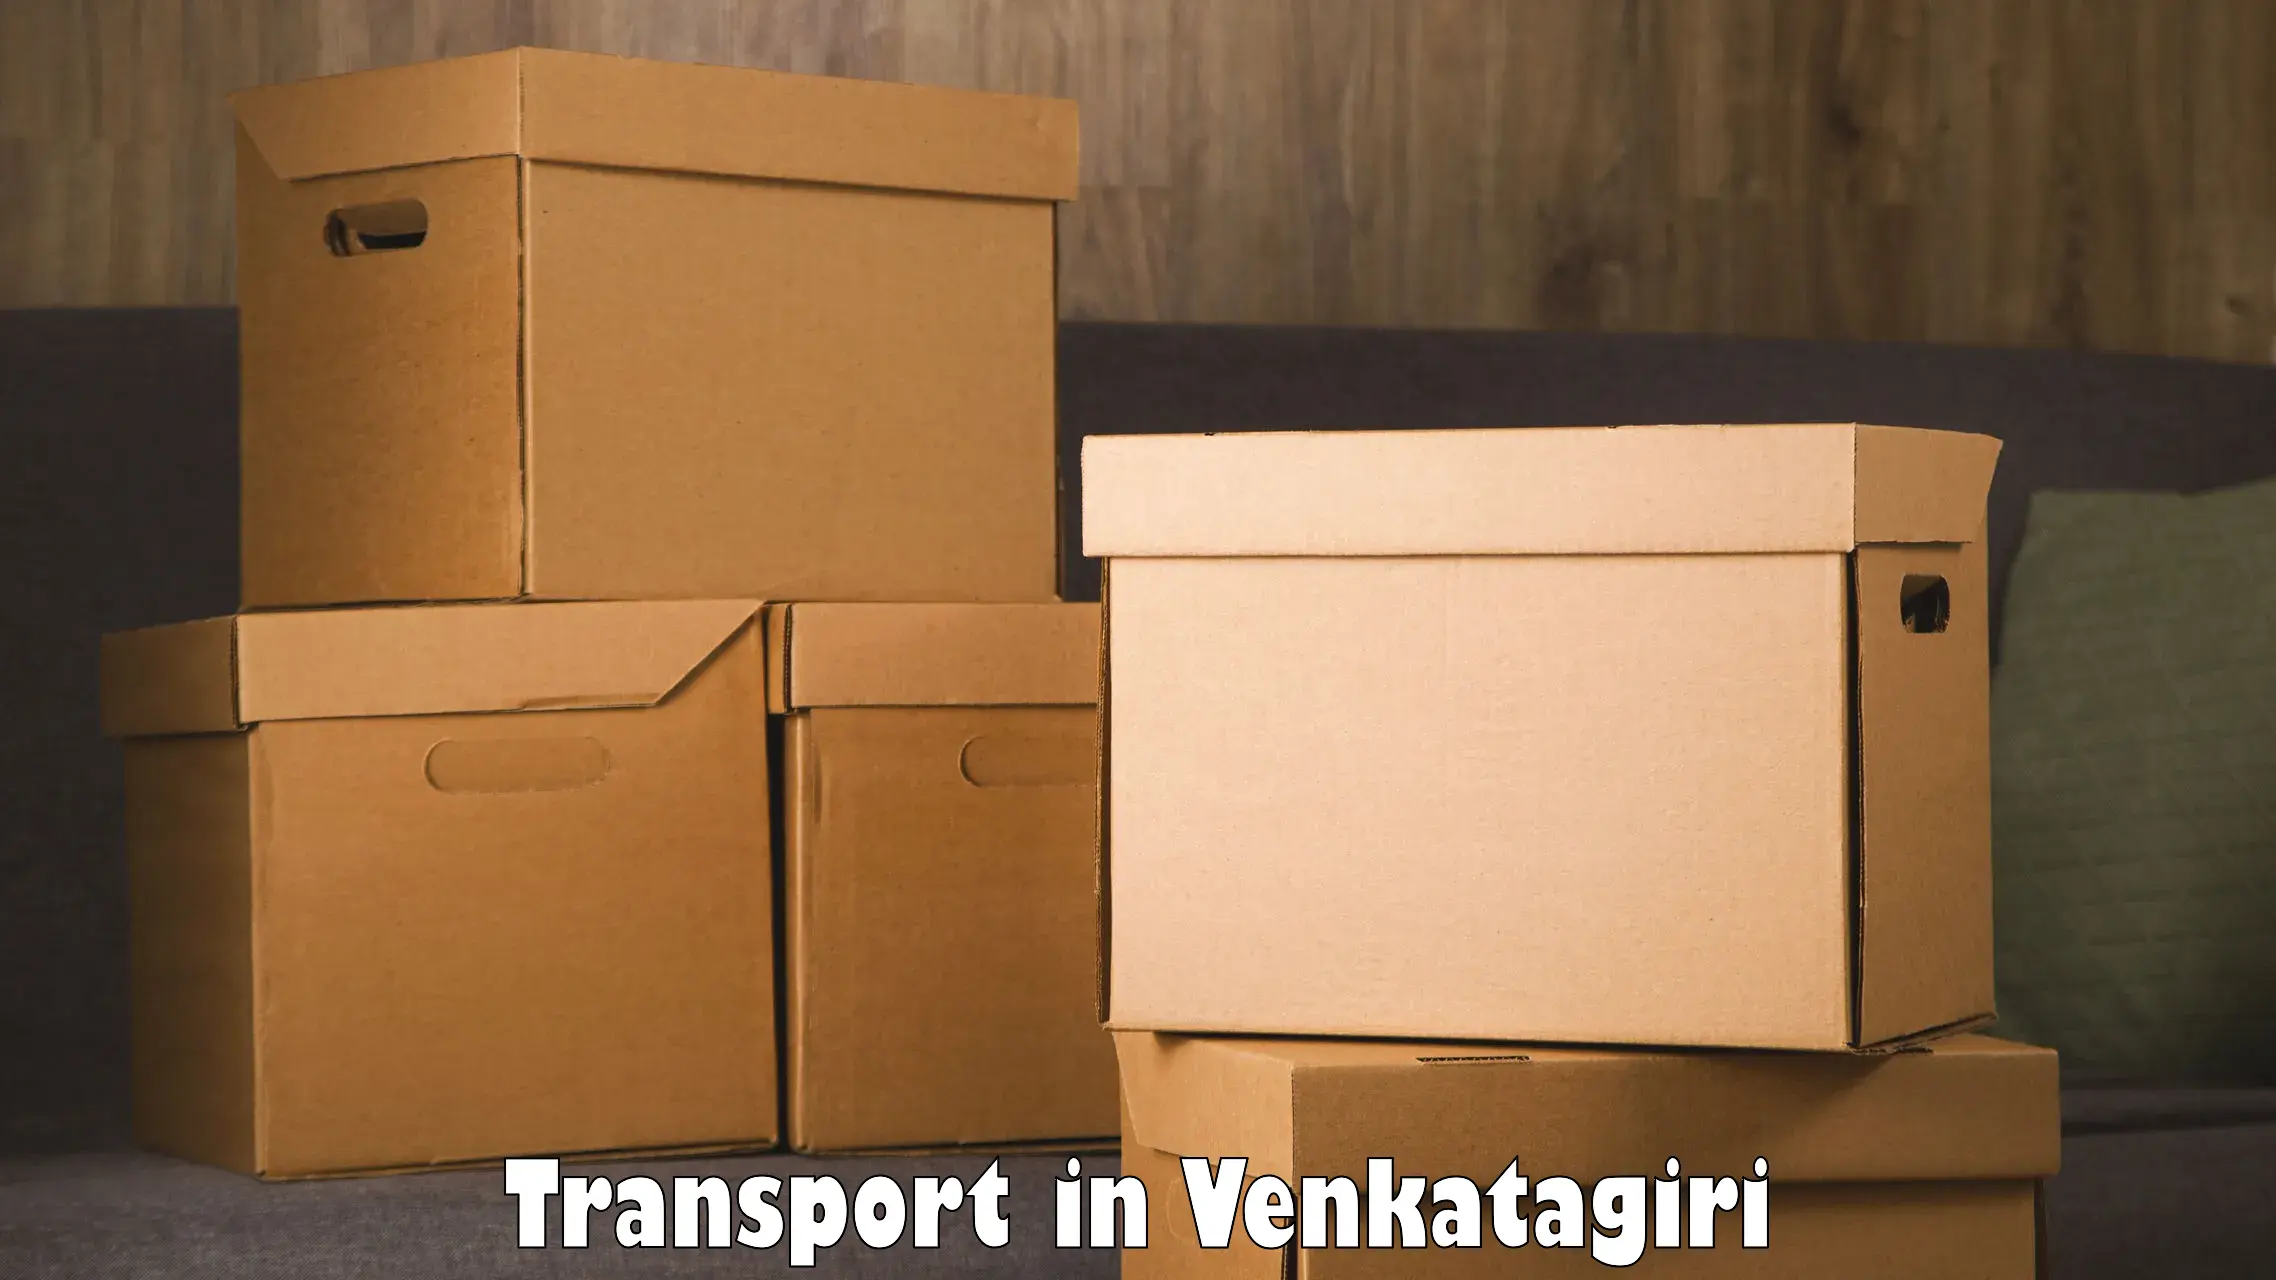 Transportation services in Venkatagiri